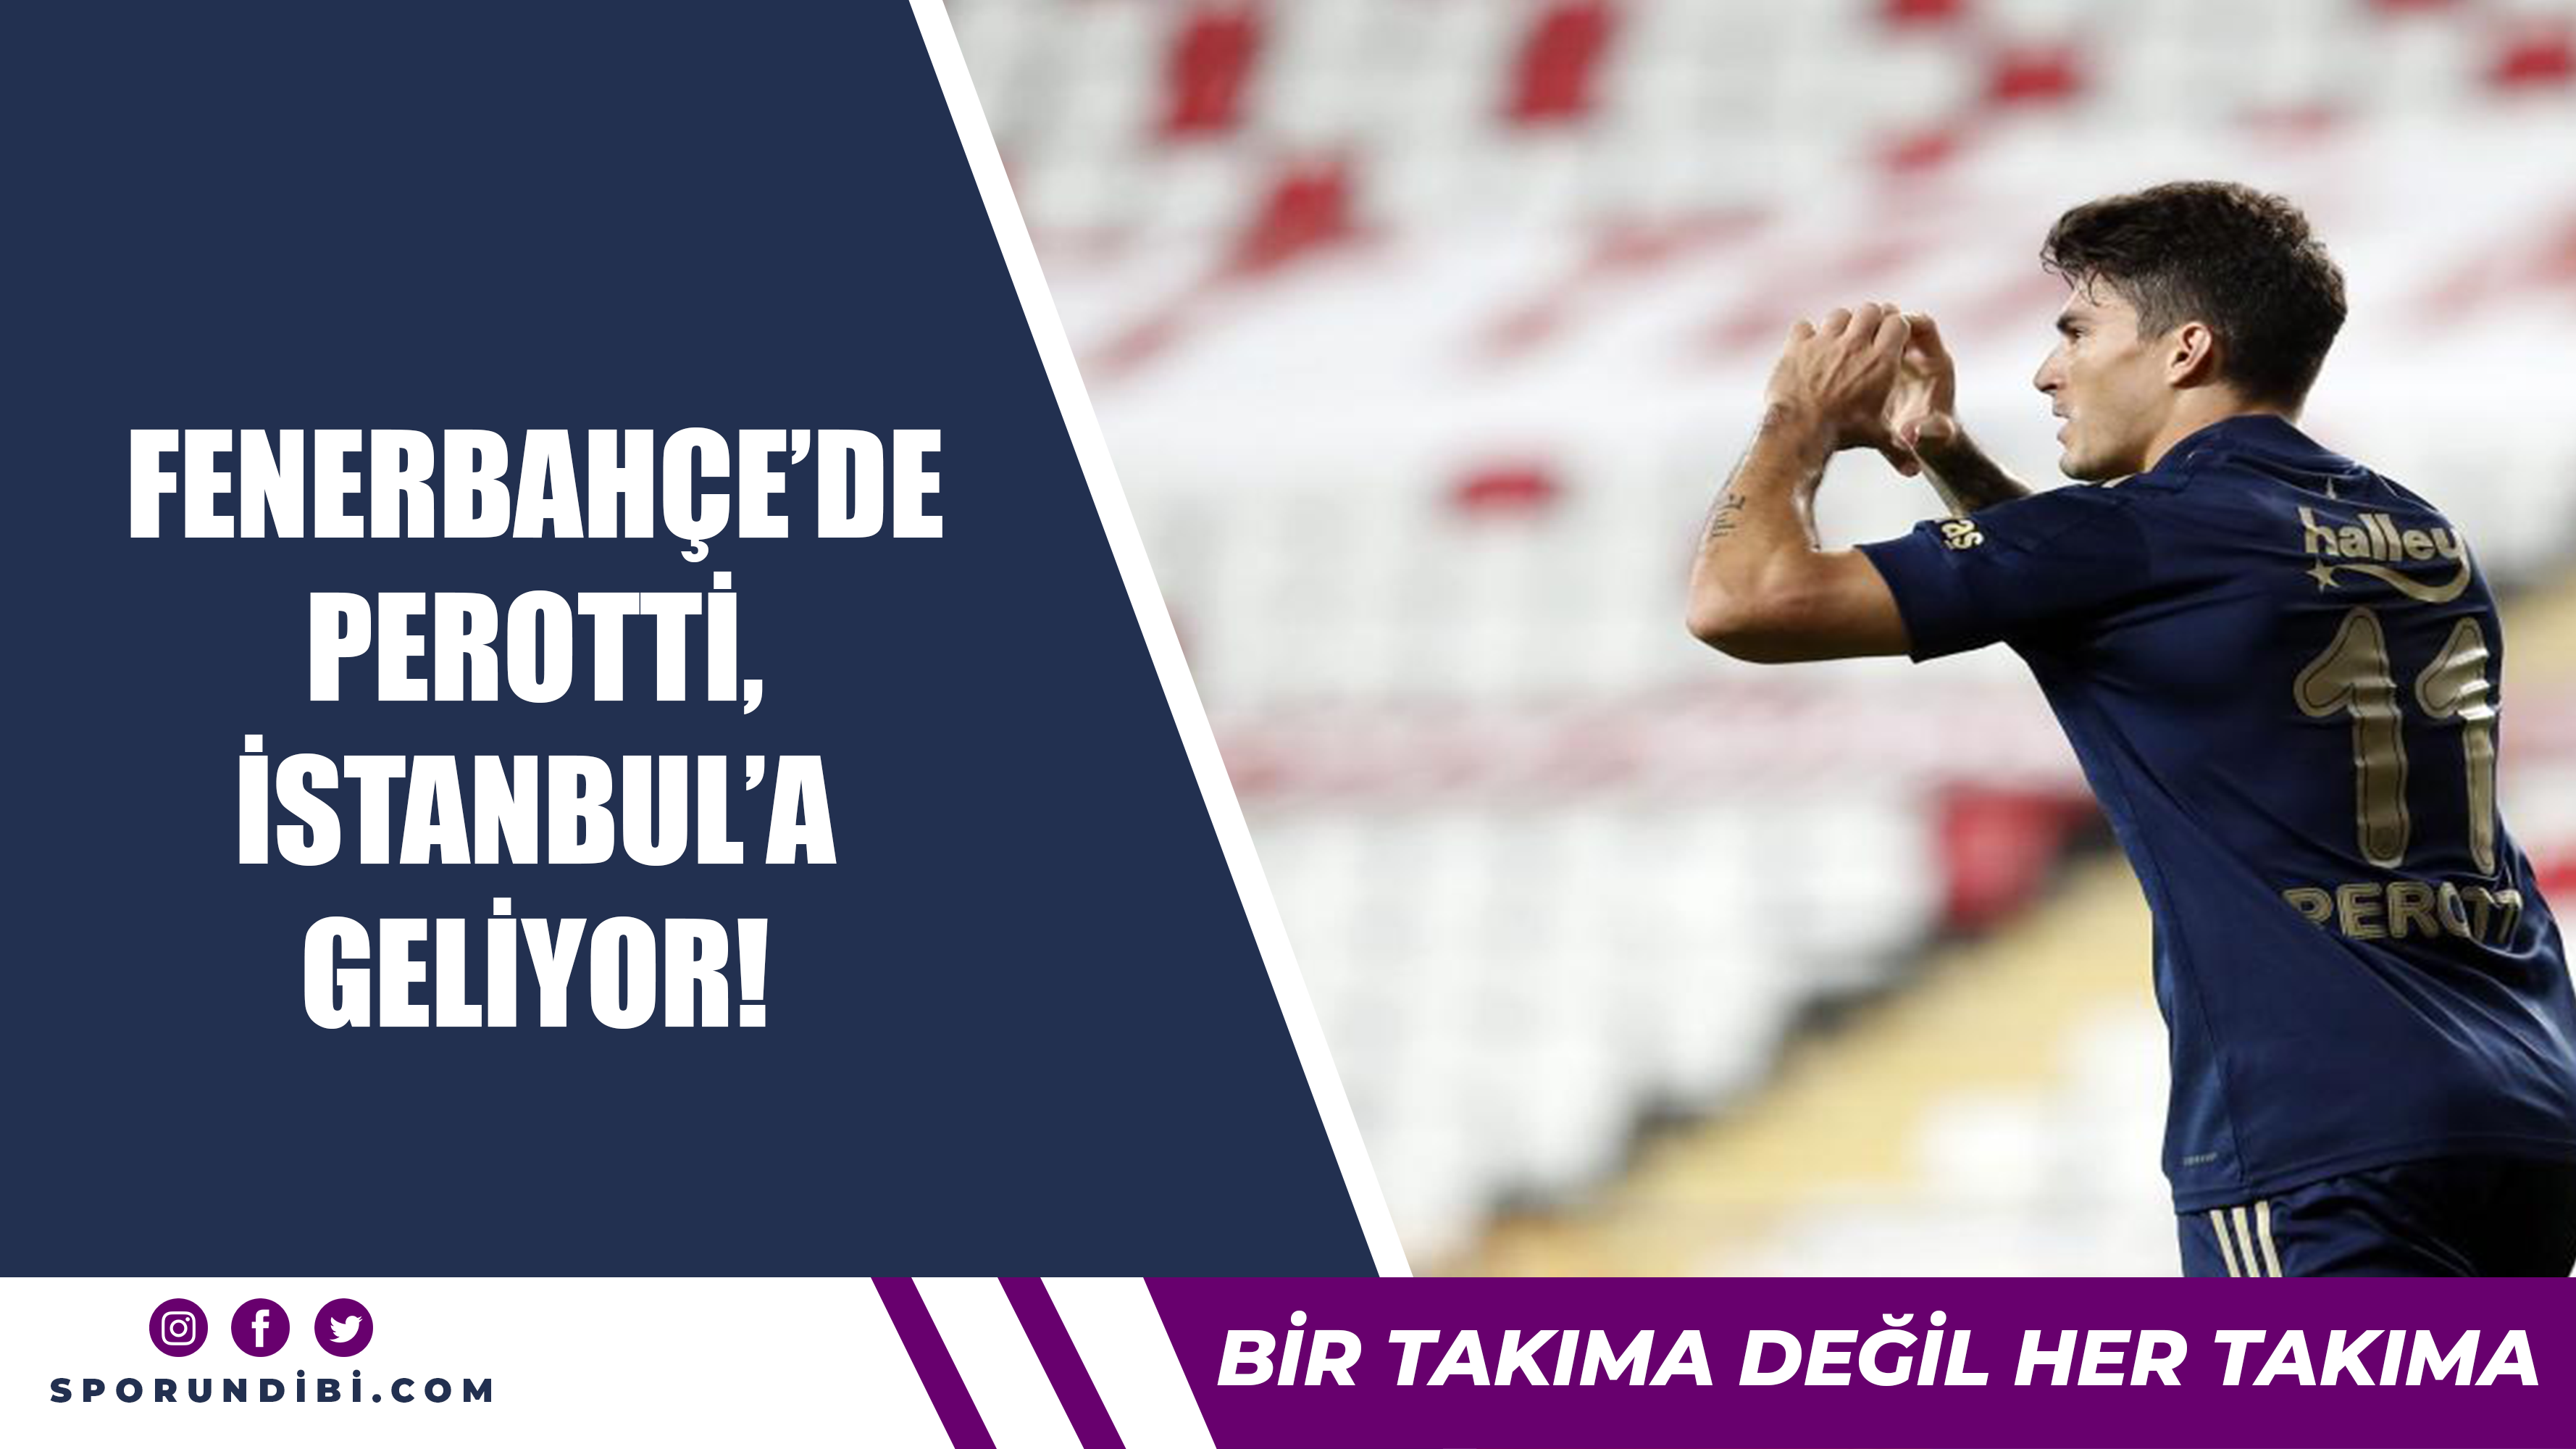 Fenerbahçe'de Perotti İstanbul'a geliyor!